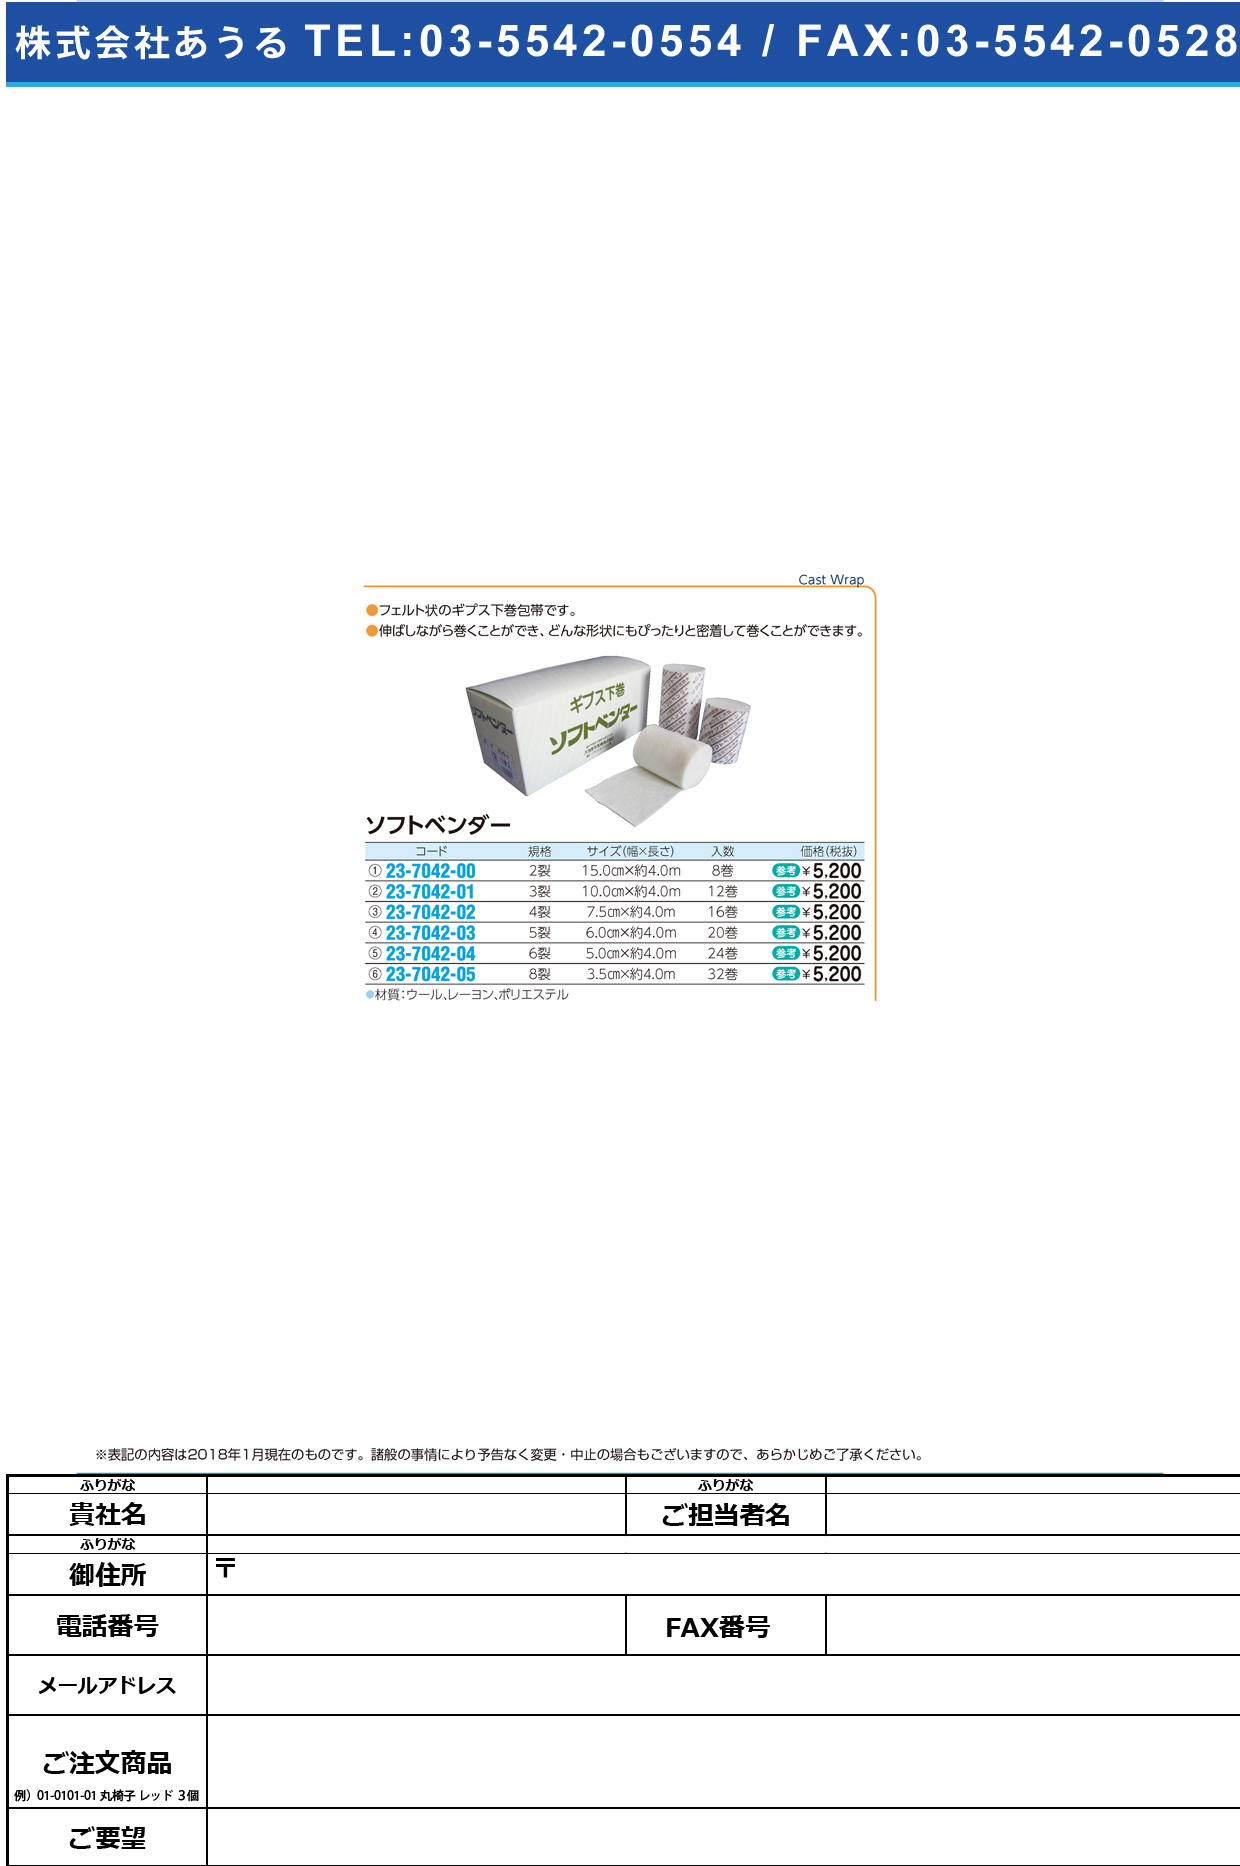 (23-7042-05)ソフトベンダー（８裂） 3.5CMX4M(32ｶﾝｲﾘ) ｿﾌﾄﾍﾞﾝﾀﾞｰ8ﾚﾂ【1箱単位】【2019年カタログ商品】